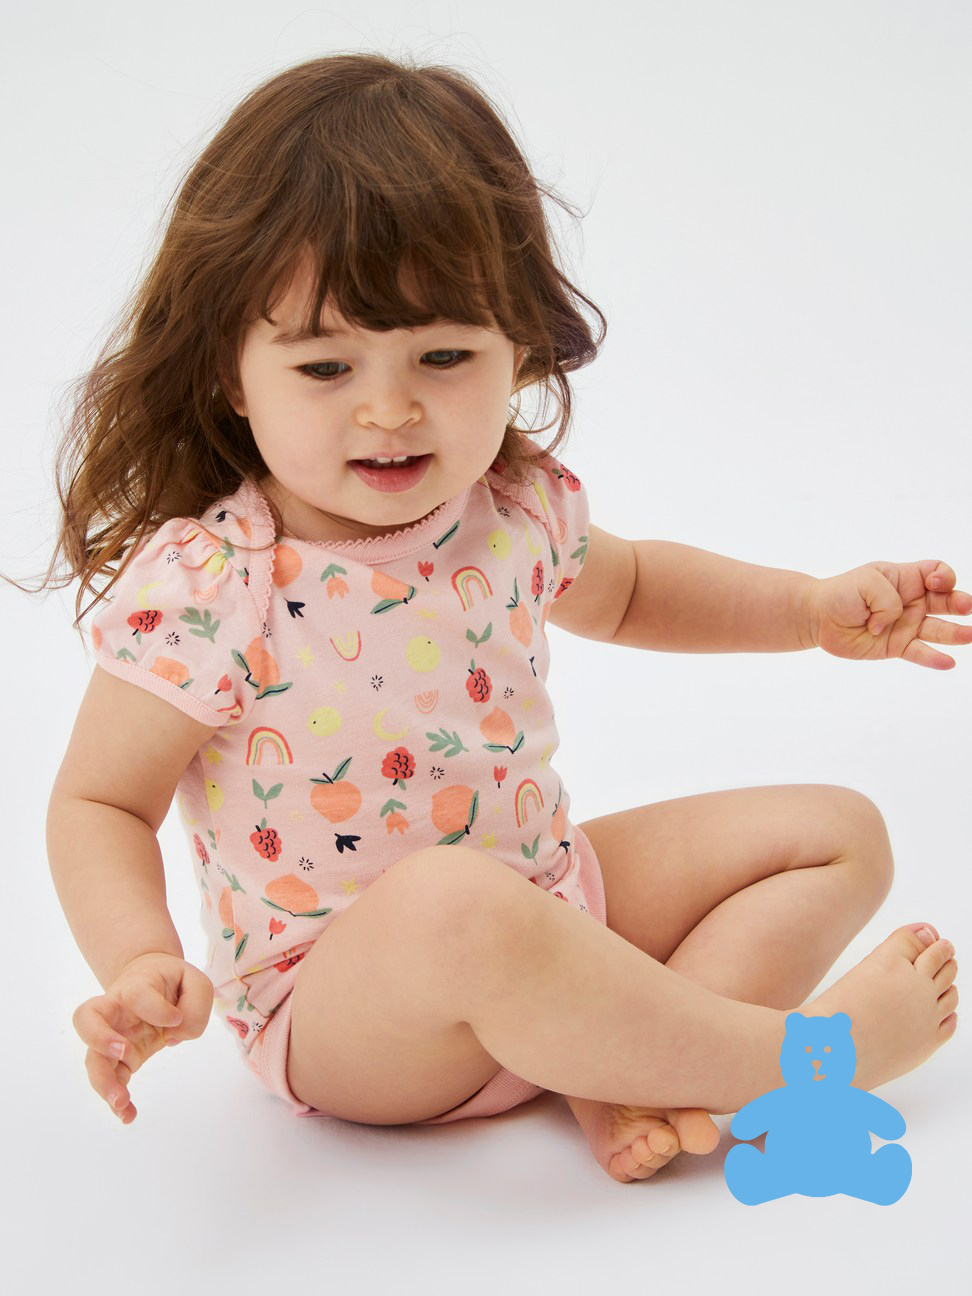 嬰兒裝|純棉印花短袖包屁衣 布萊納系列-粉色